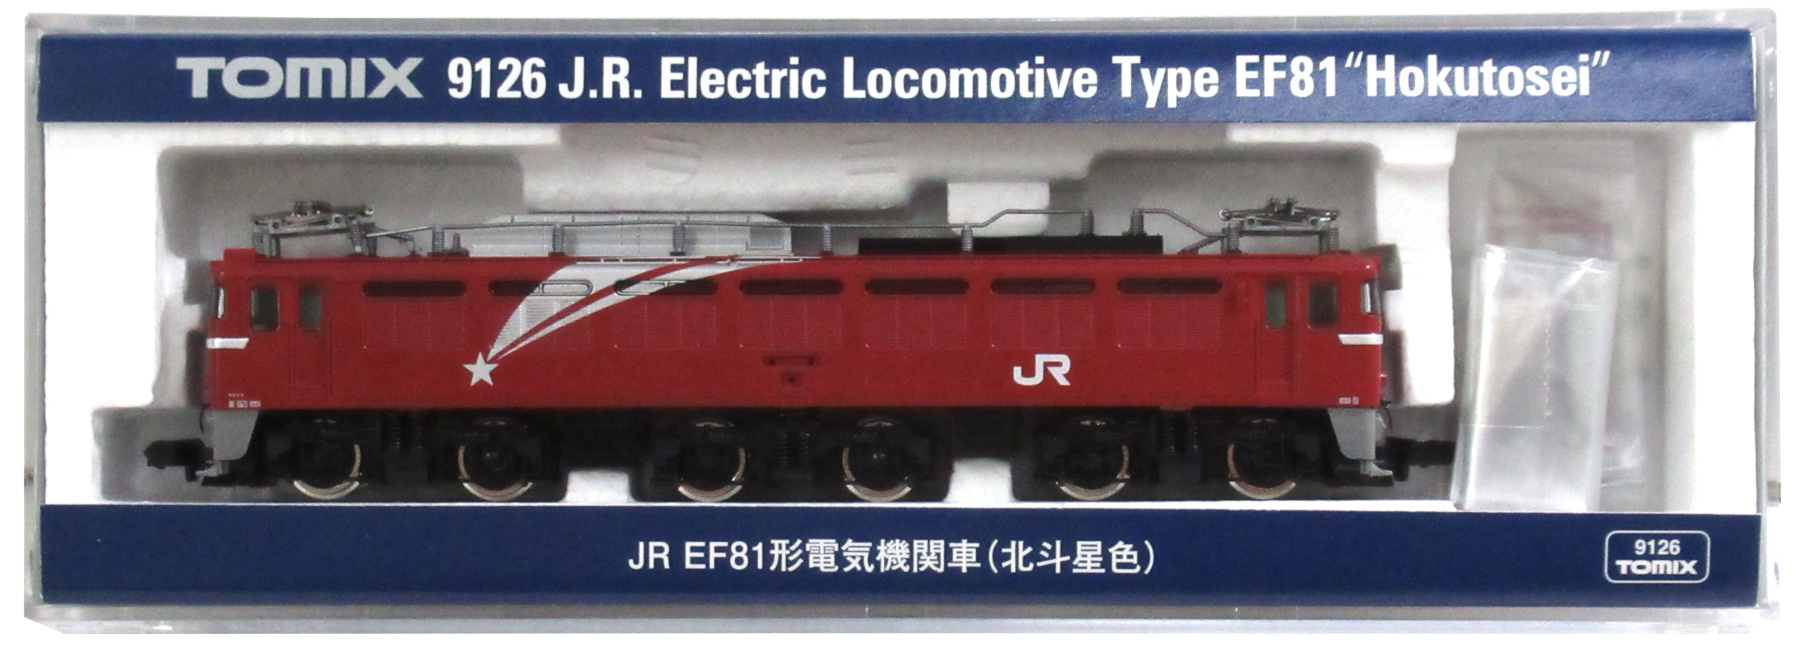 9126 JR EF81形電気機関車(北斗星色)